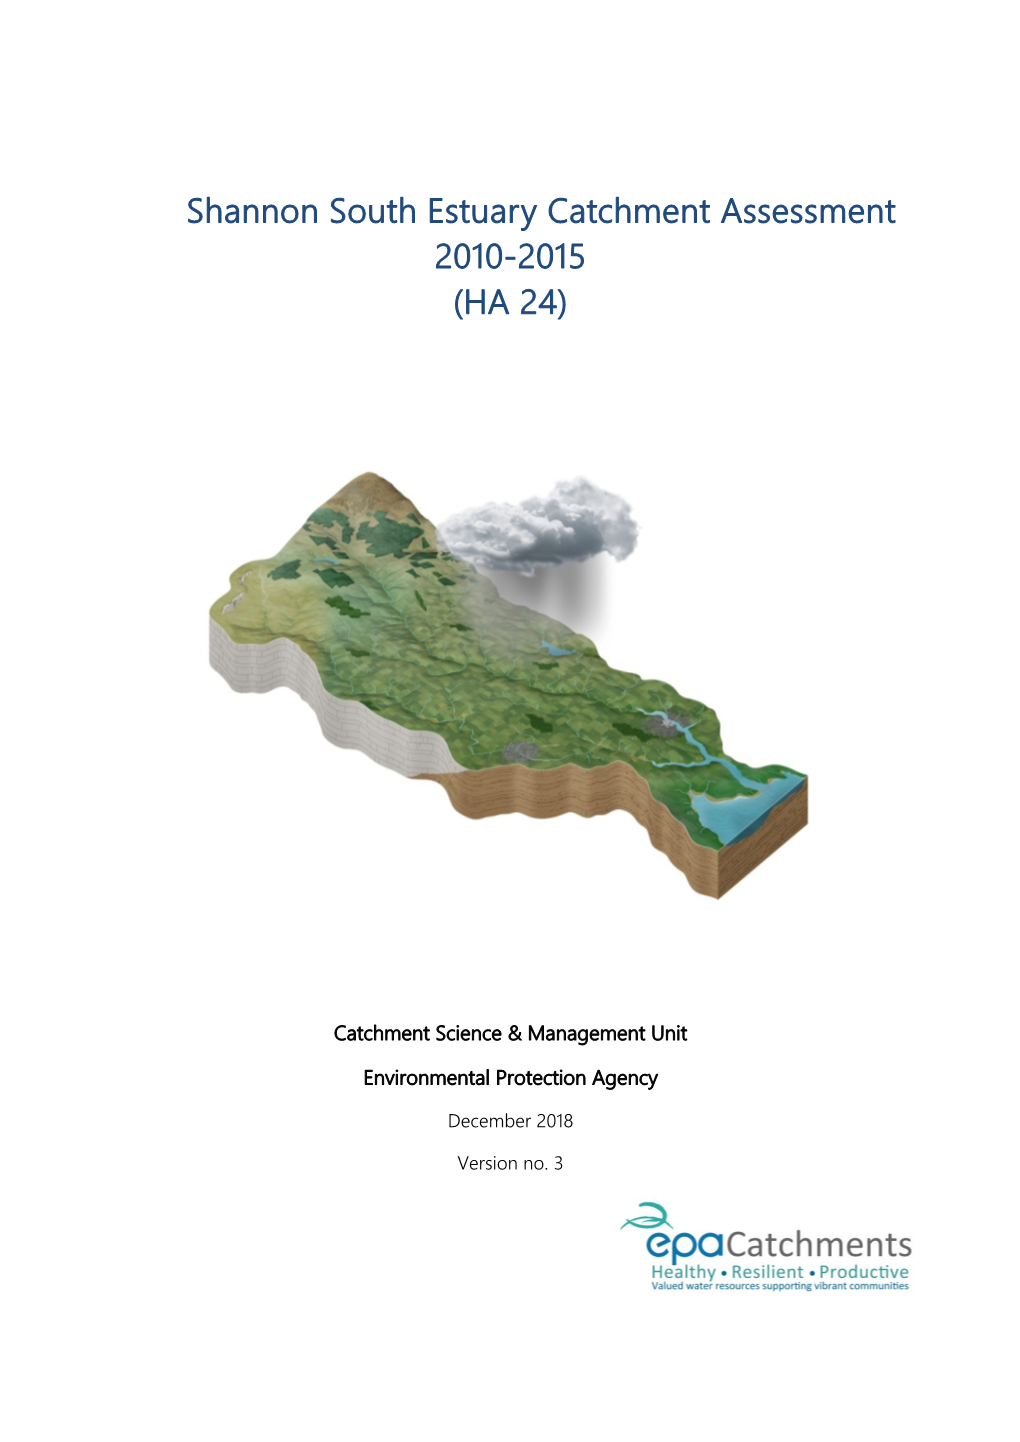 Shannon South Estuary Catchment Assessment 2010-2015 (HA 24)